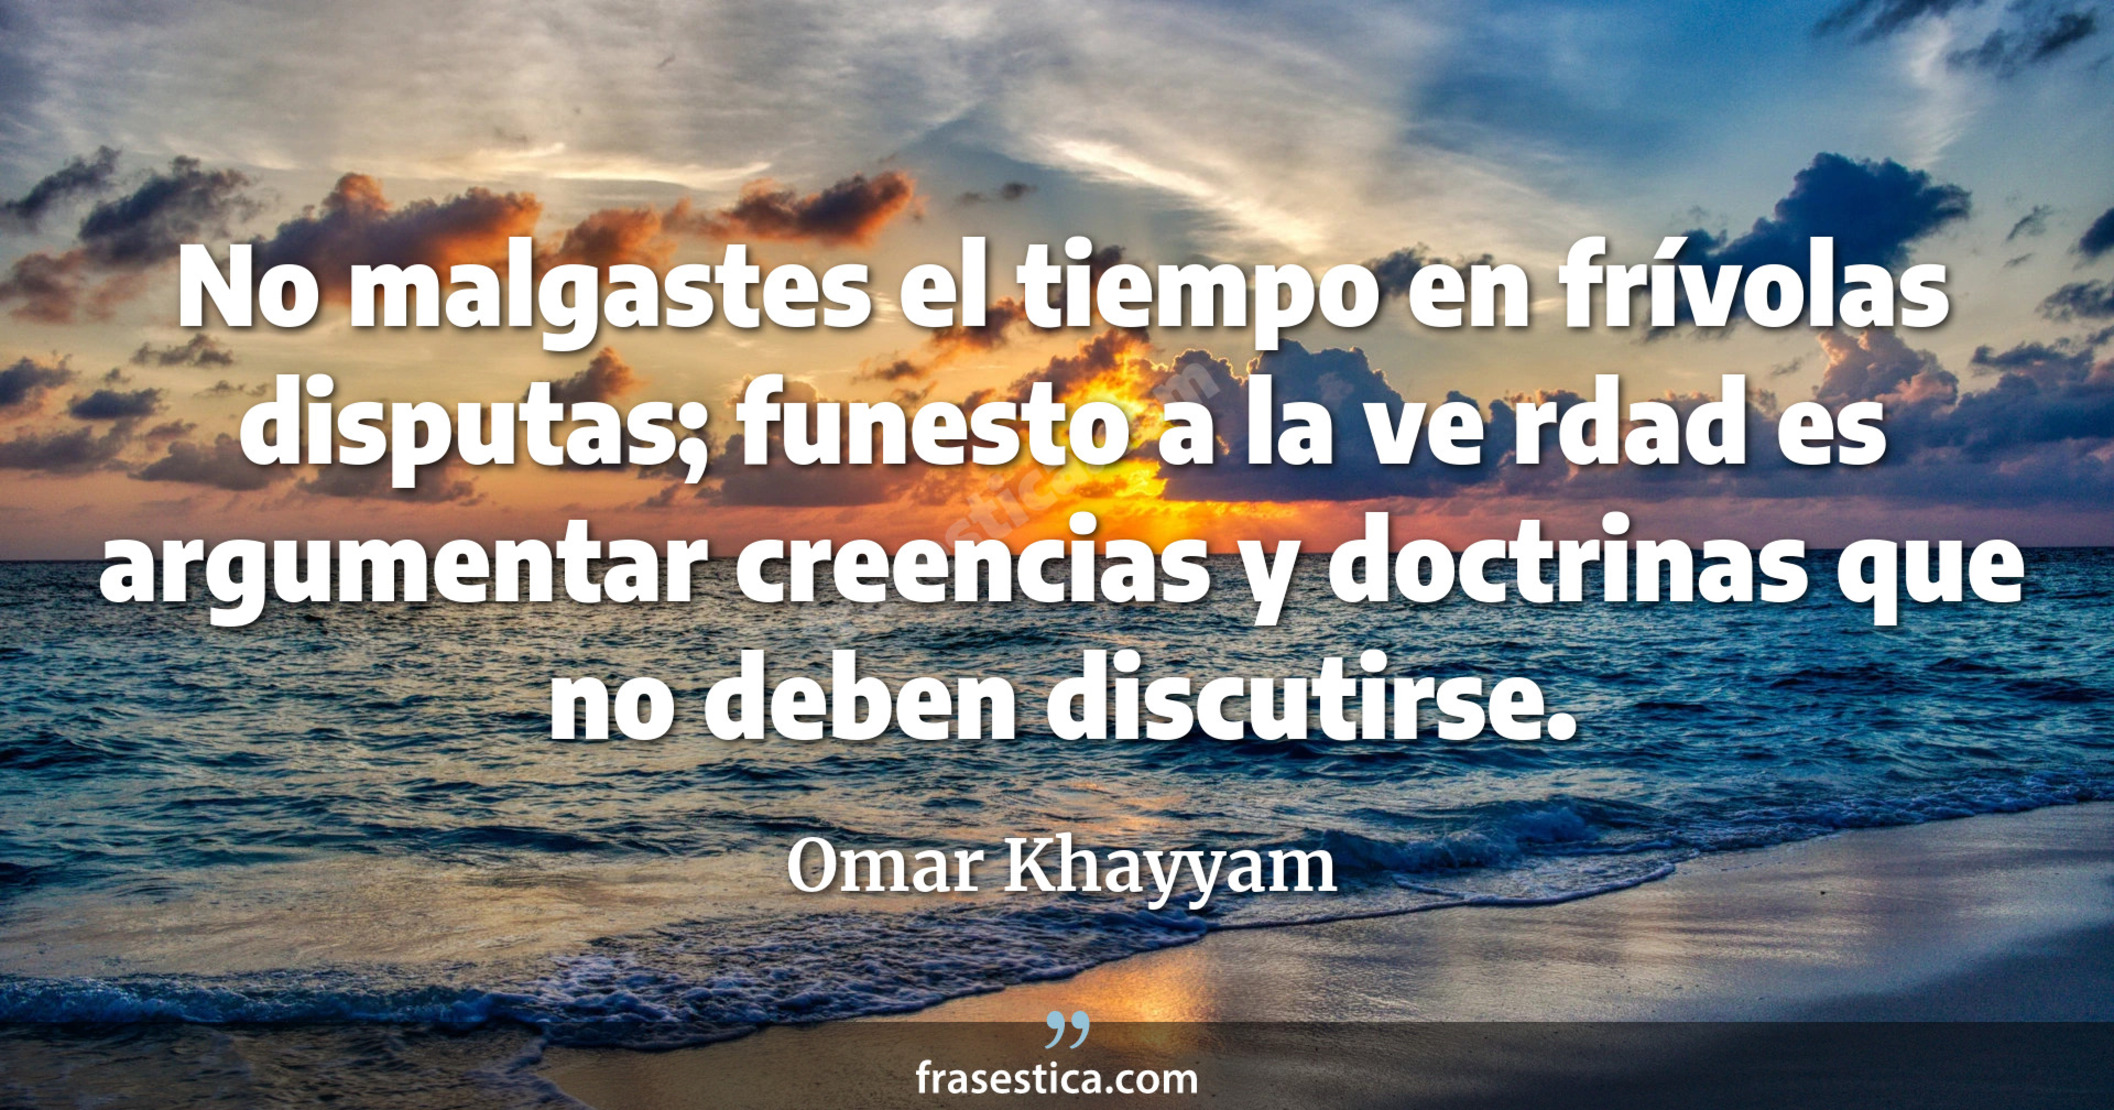 No malgastes el tiempo en frívolas disputas; funesto a la ve rdad es argumentar creencias y doctrinas que no deben discutirse. - Omar Khayyam